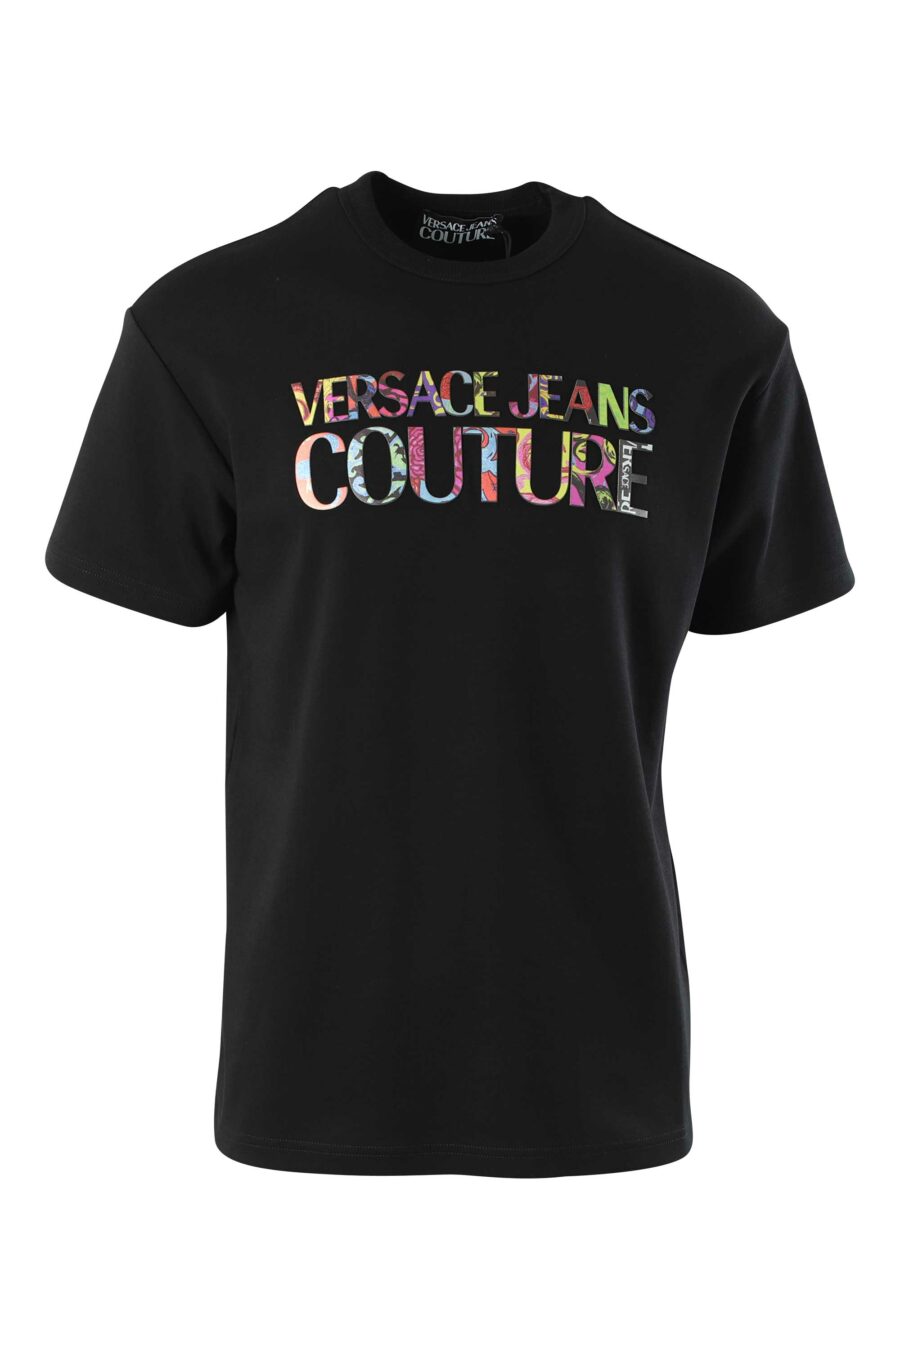 Camiseta negra con logo multicolor centrado - 8052019322125